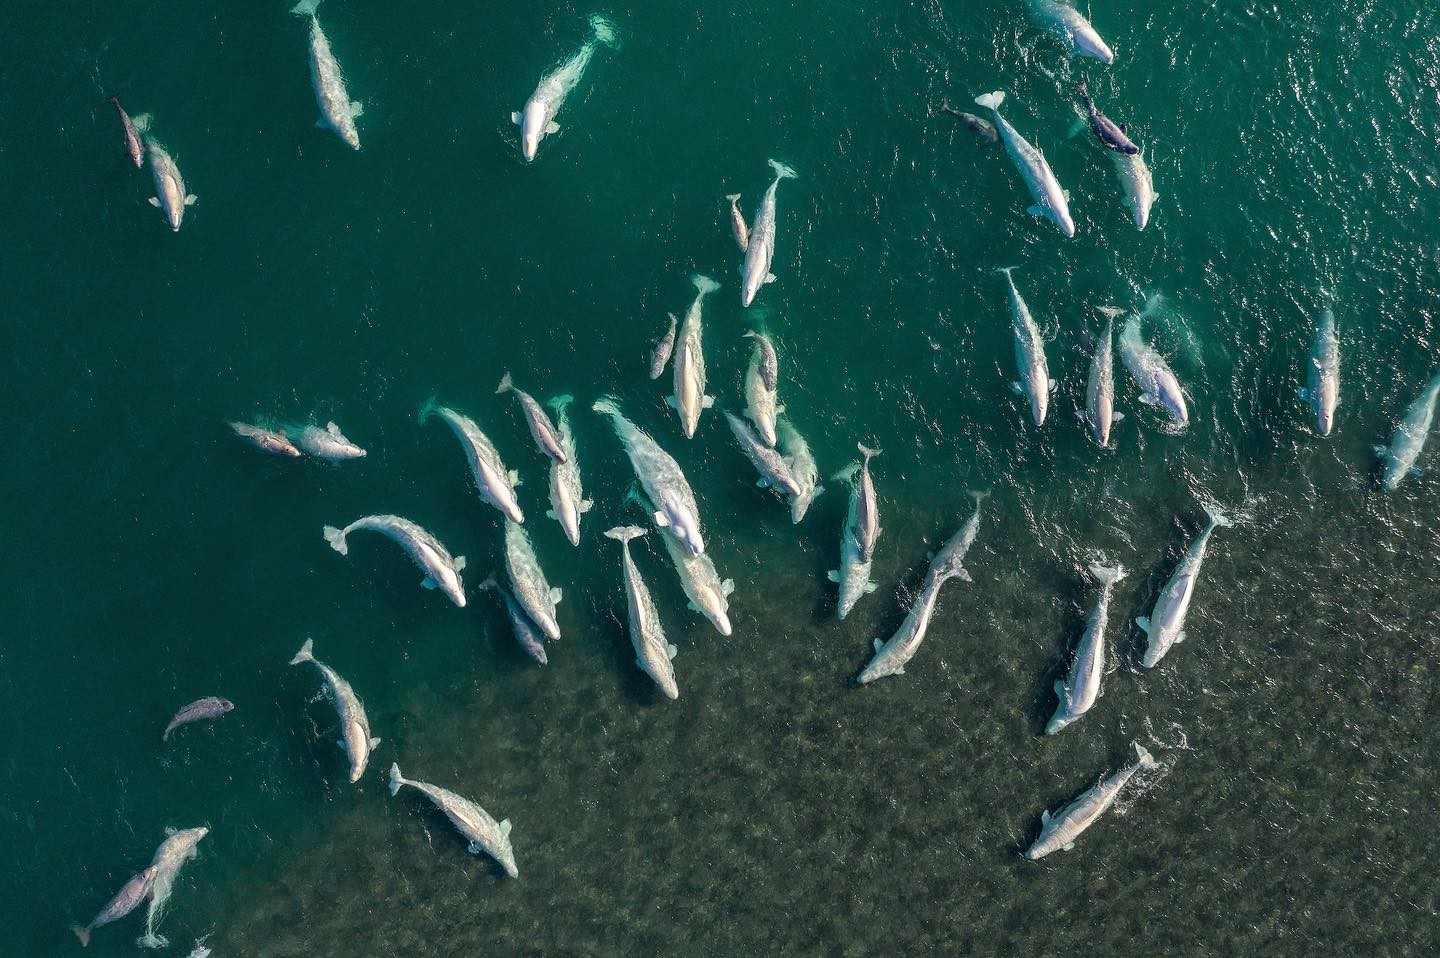 Beluga whales gather